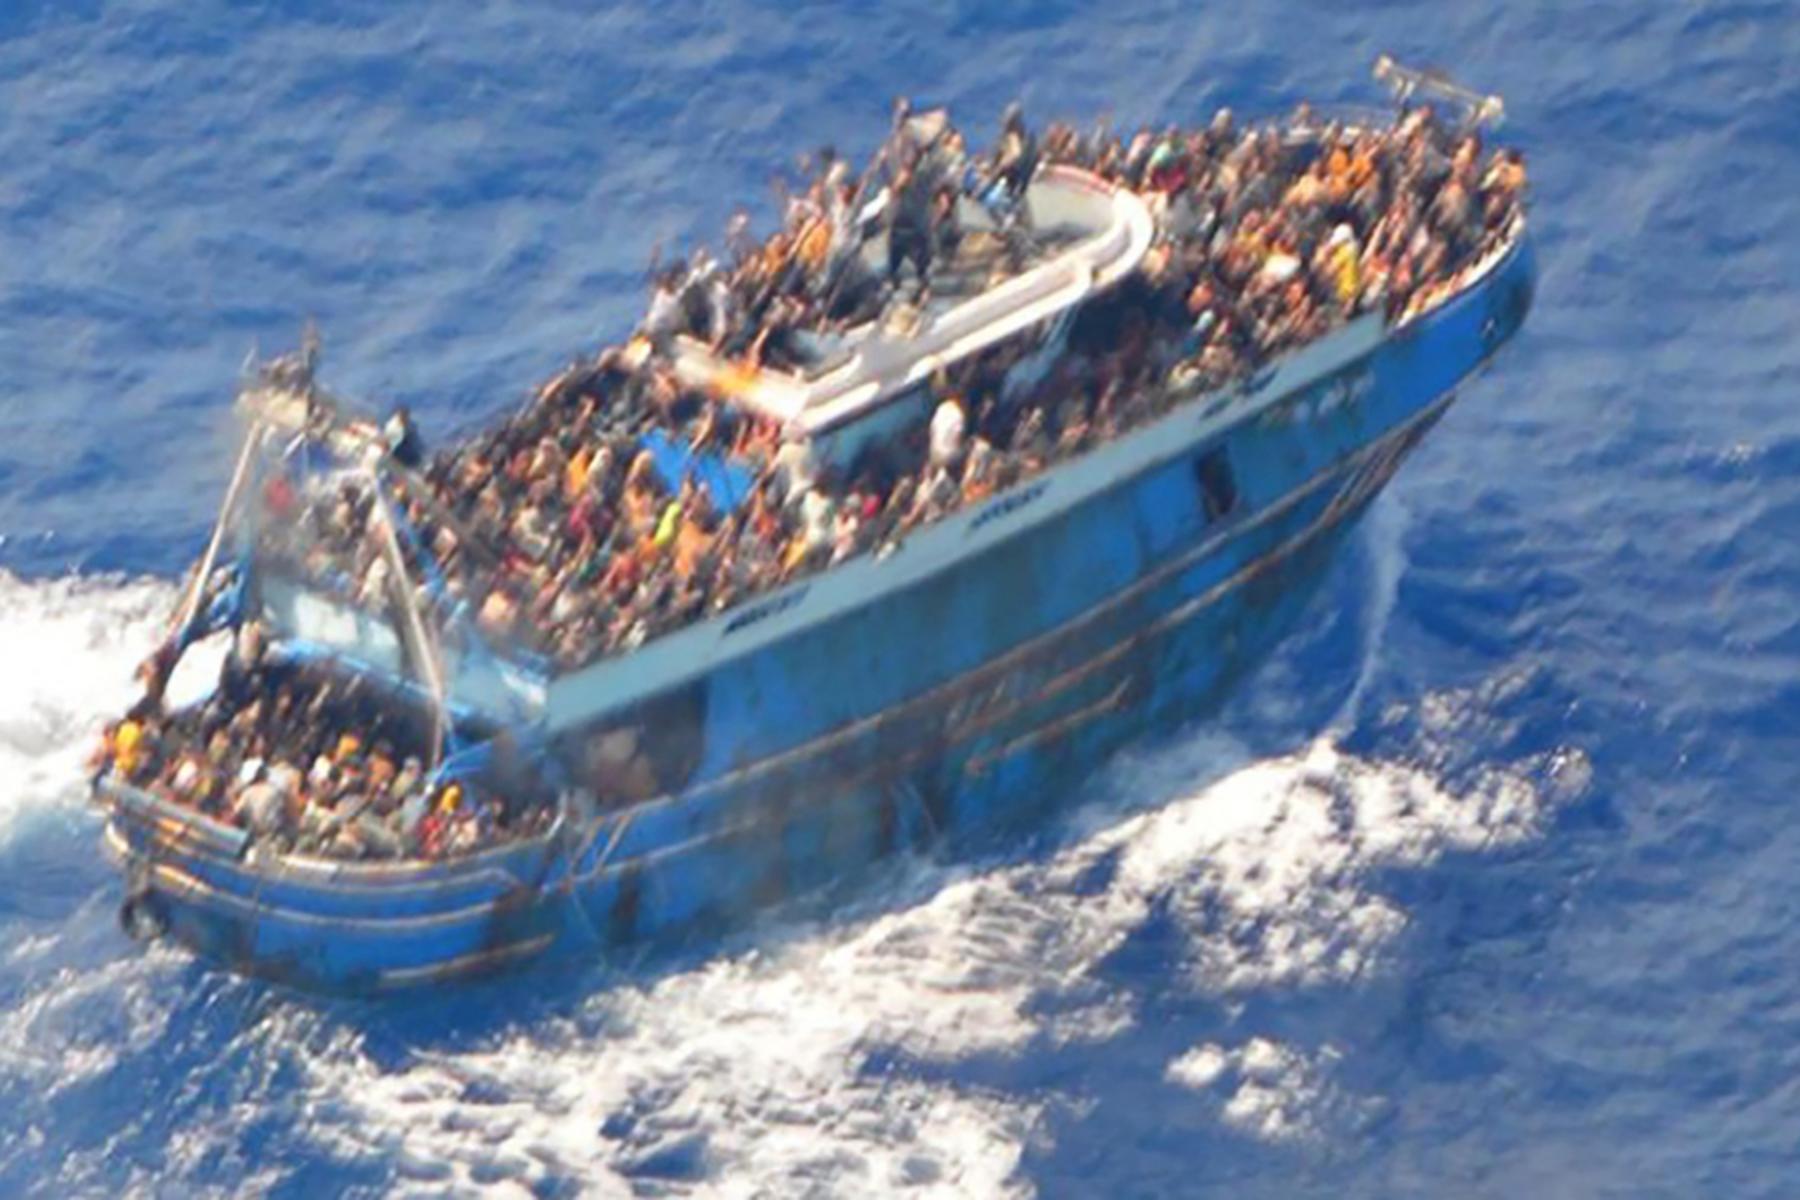 Athen/Wien | Griechische Küstenwache rettet über 100 Migranten vor Kreta